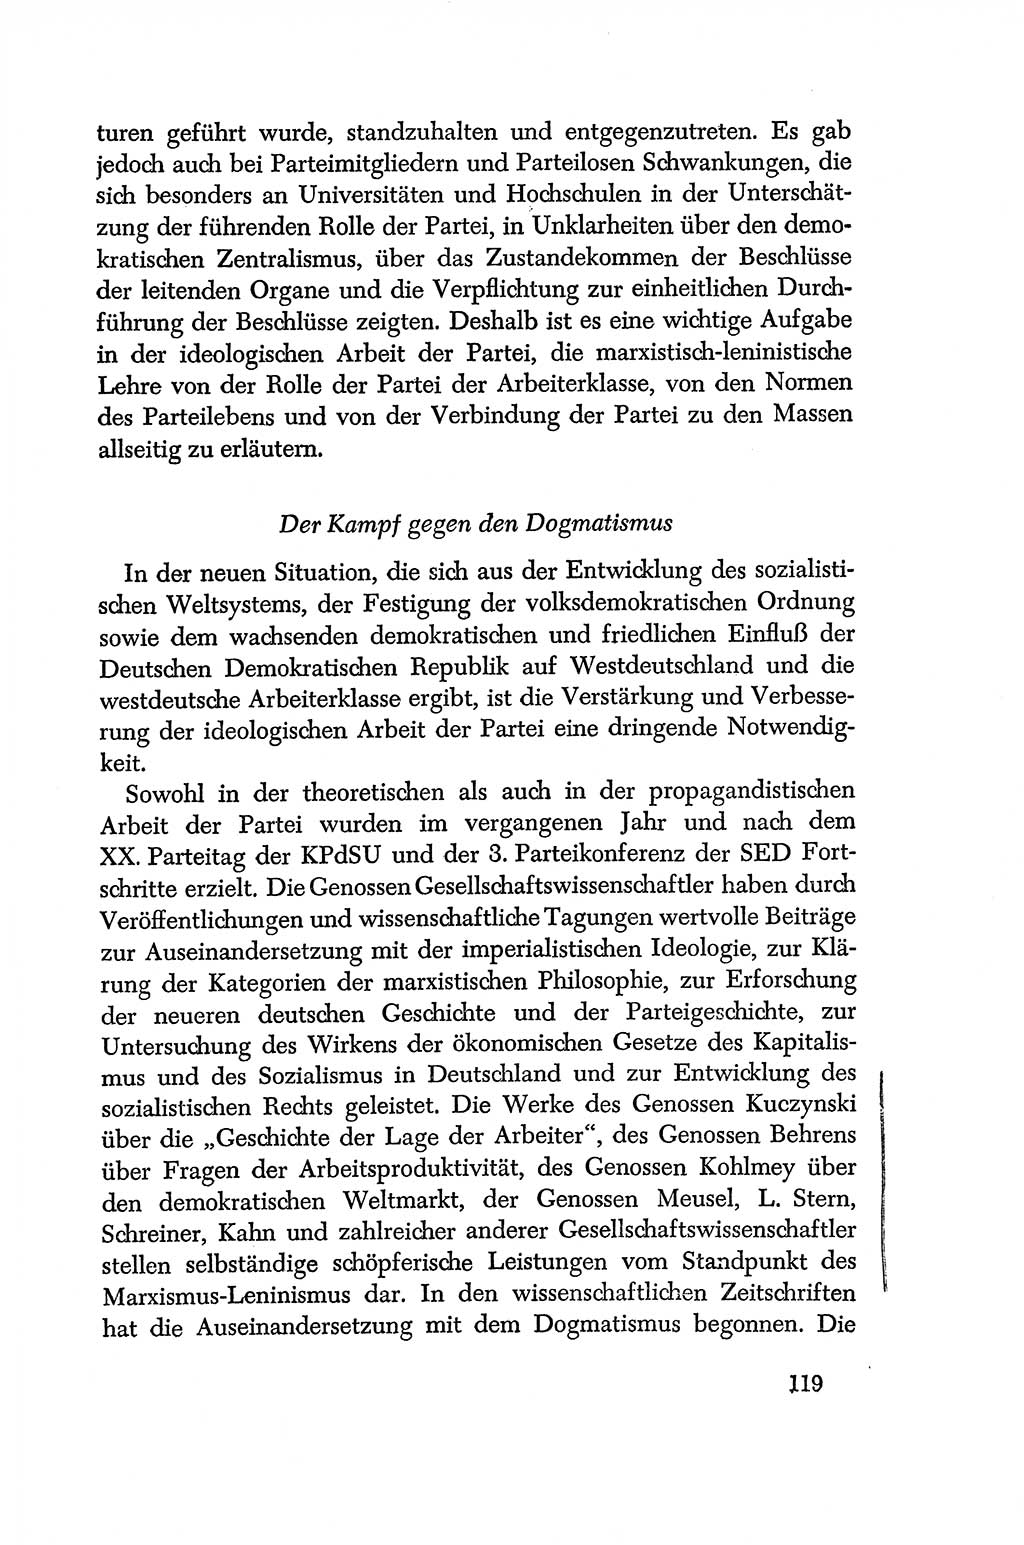 Dokumente der Sozialistischen Einheitspartei Deutschlands (SED) [Deutsche Demokratische Republik (DDR)] 1956-1957, Seite 119 (Dok. SED DDR 1956-1957, S. 119)